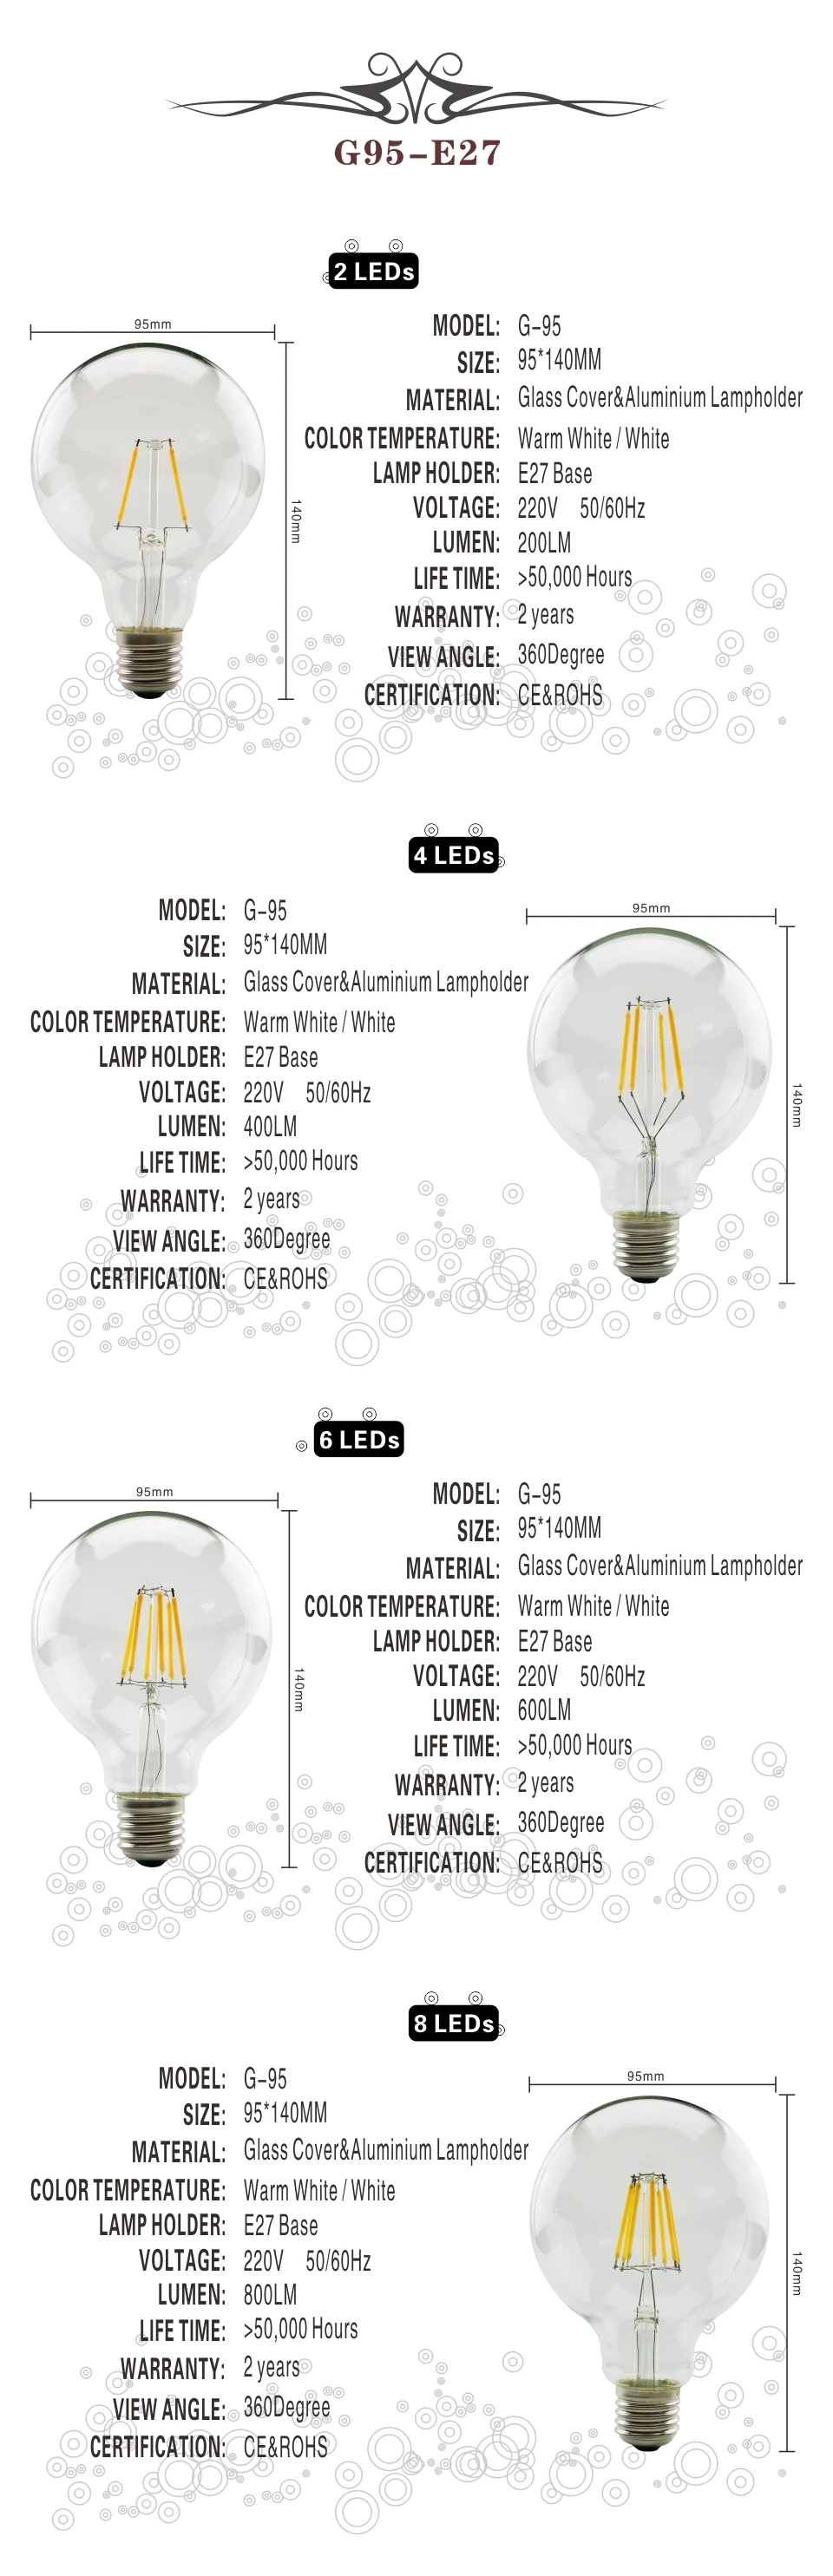 LARZI светодиодный Эдисон лампы E27 G80 G95 G125 светодиодный 220V светодиодный лампы накаливания светильник 220V 2W 4W 6W 8W Античная Ретро Винтаж Стекло лампа